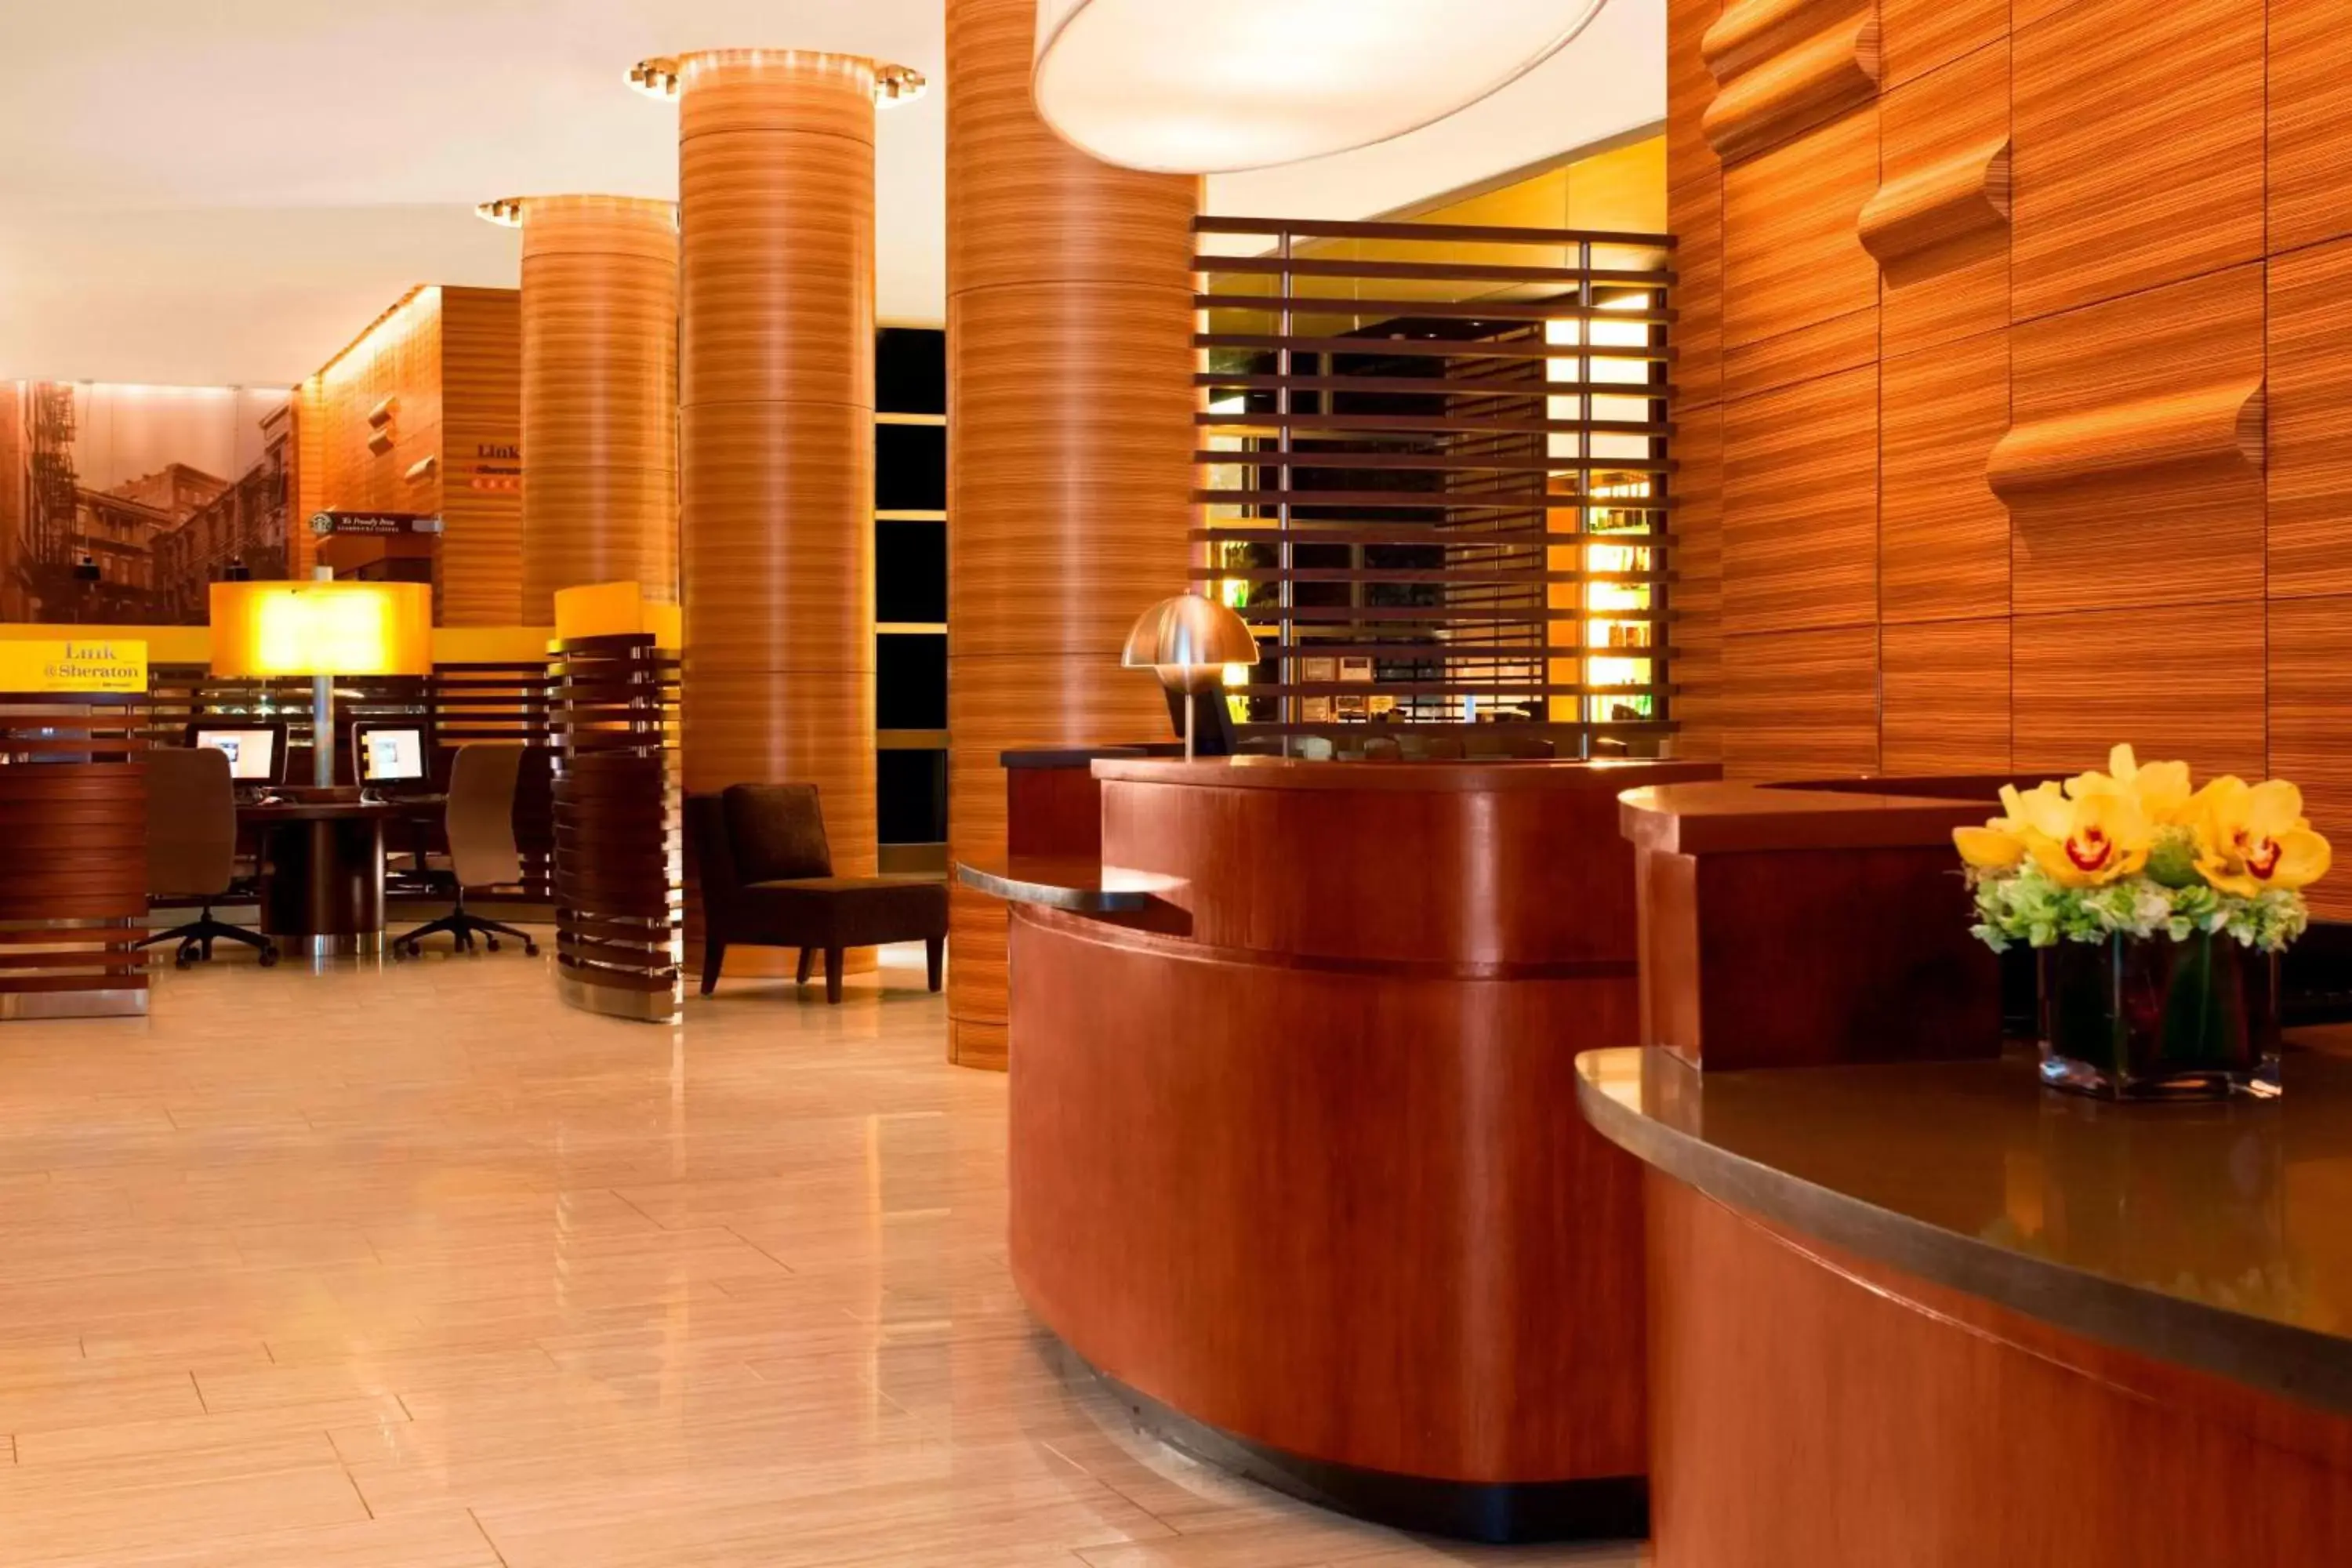 Lobby or reception, Lobby/Reception in Sheraton Tribeca New York Hotel